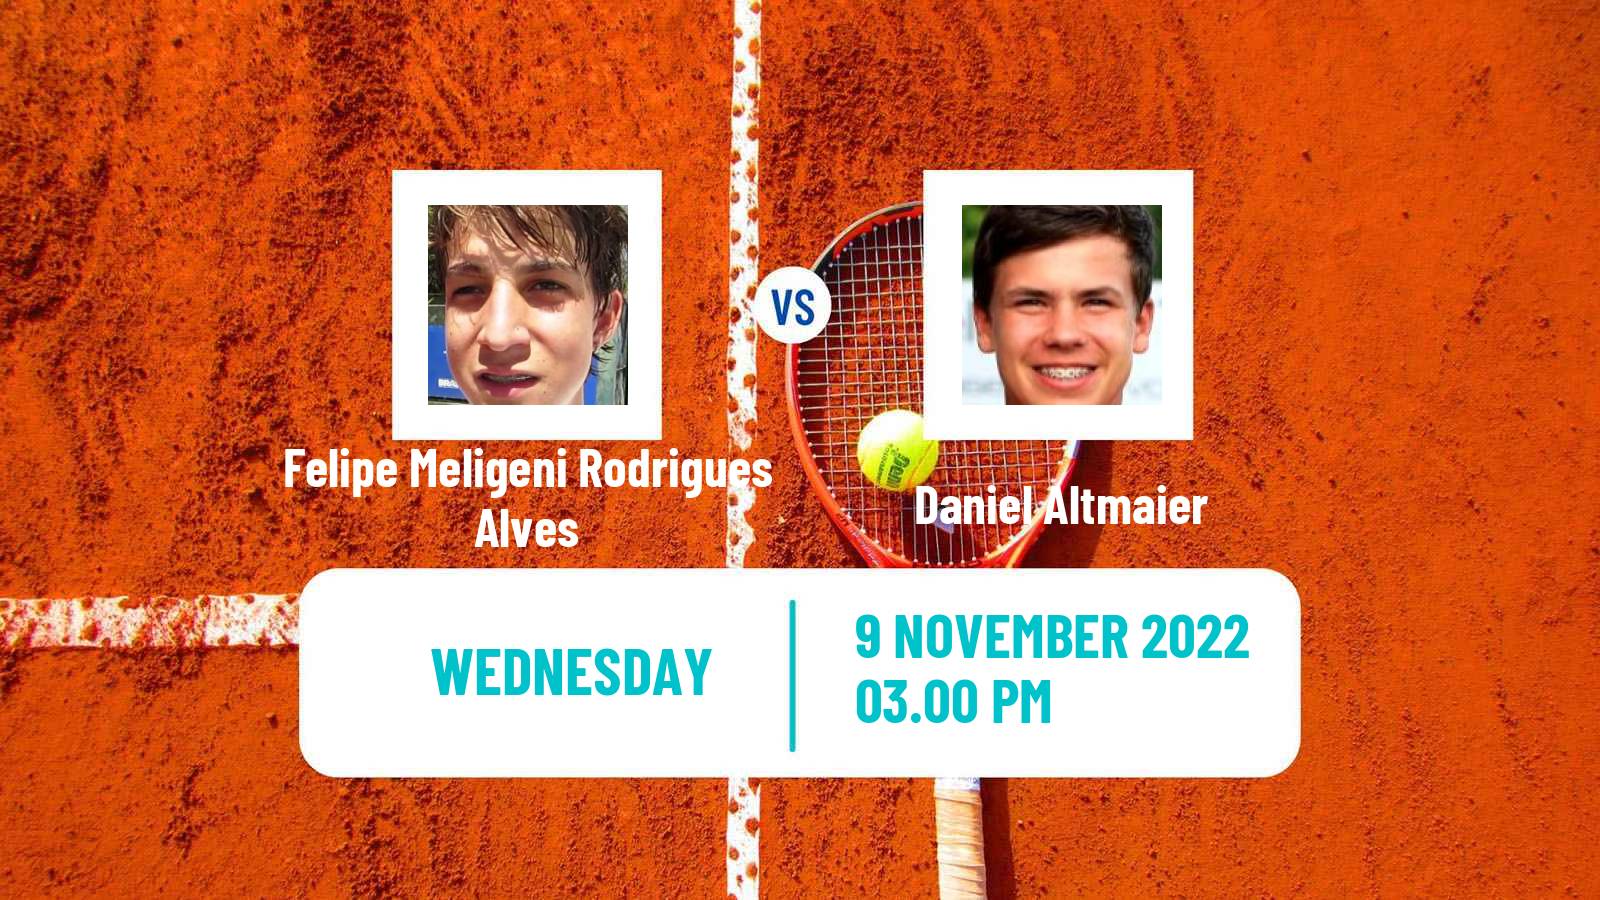 Tennis ATP Challenger Felipe Meligeni Rodrigues Alves - Daniel Altmaier